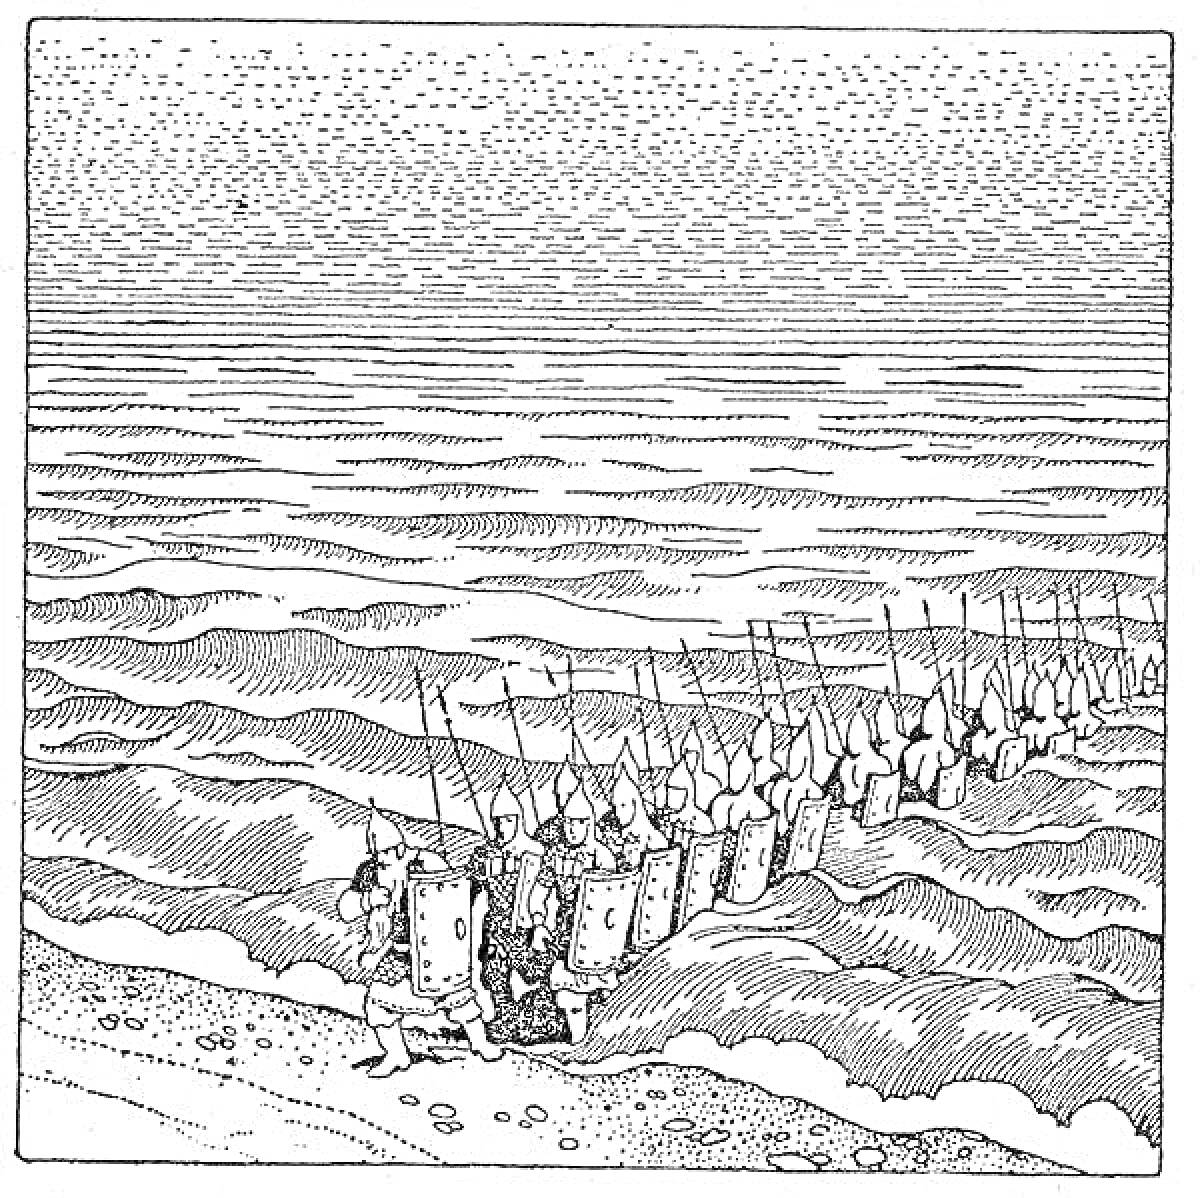 Раскраска 33 богатыра выходят из моря на берег, вооруженные копьями и щитами, изображение волнистого моря и песчаного побережья